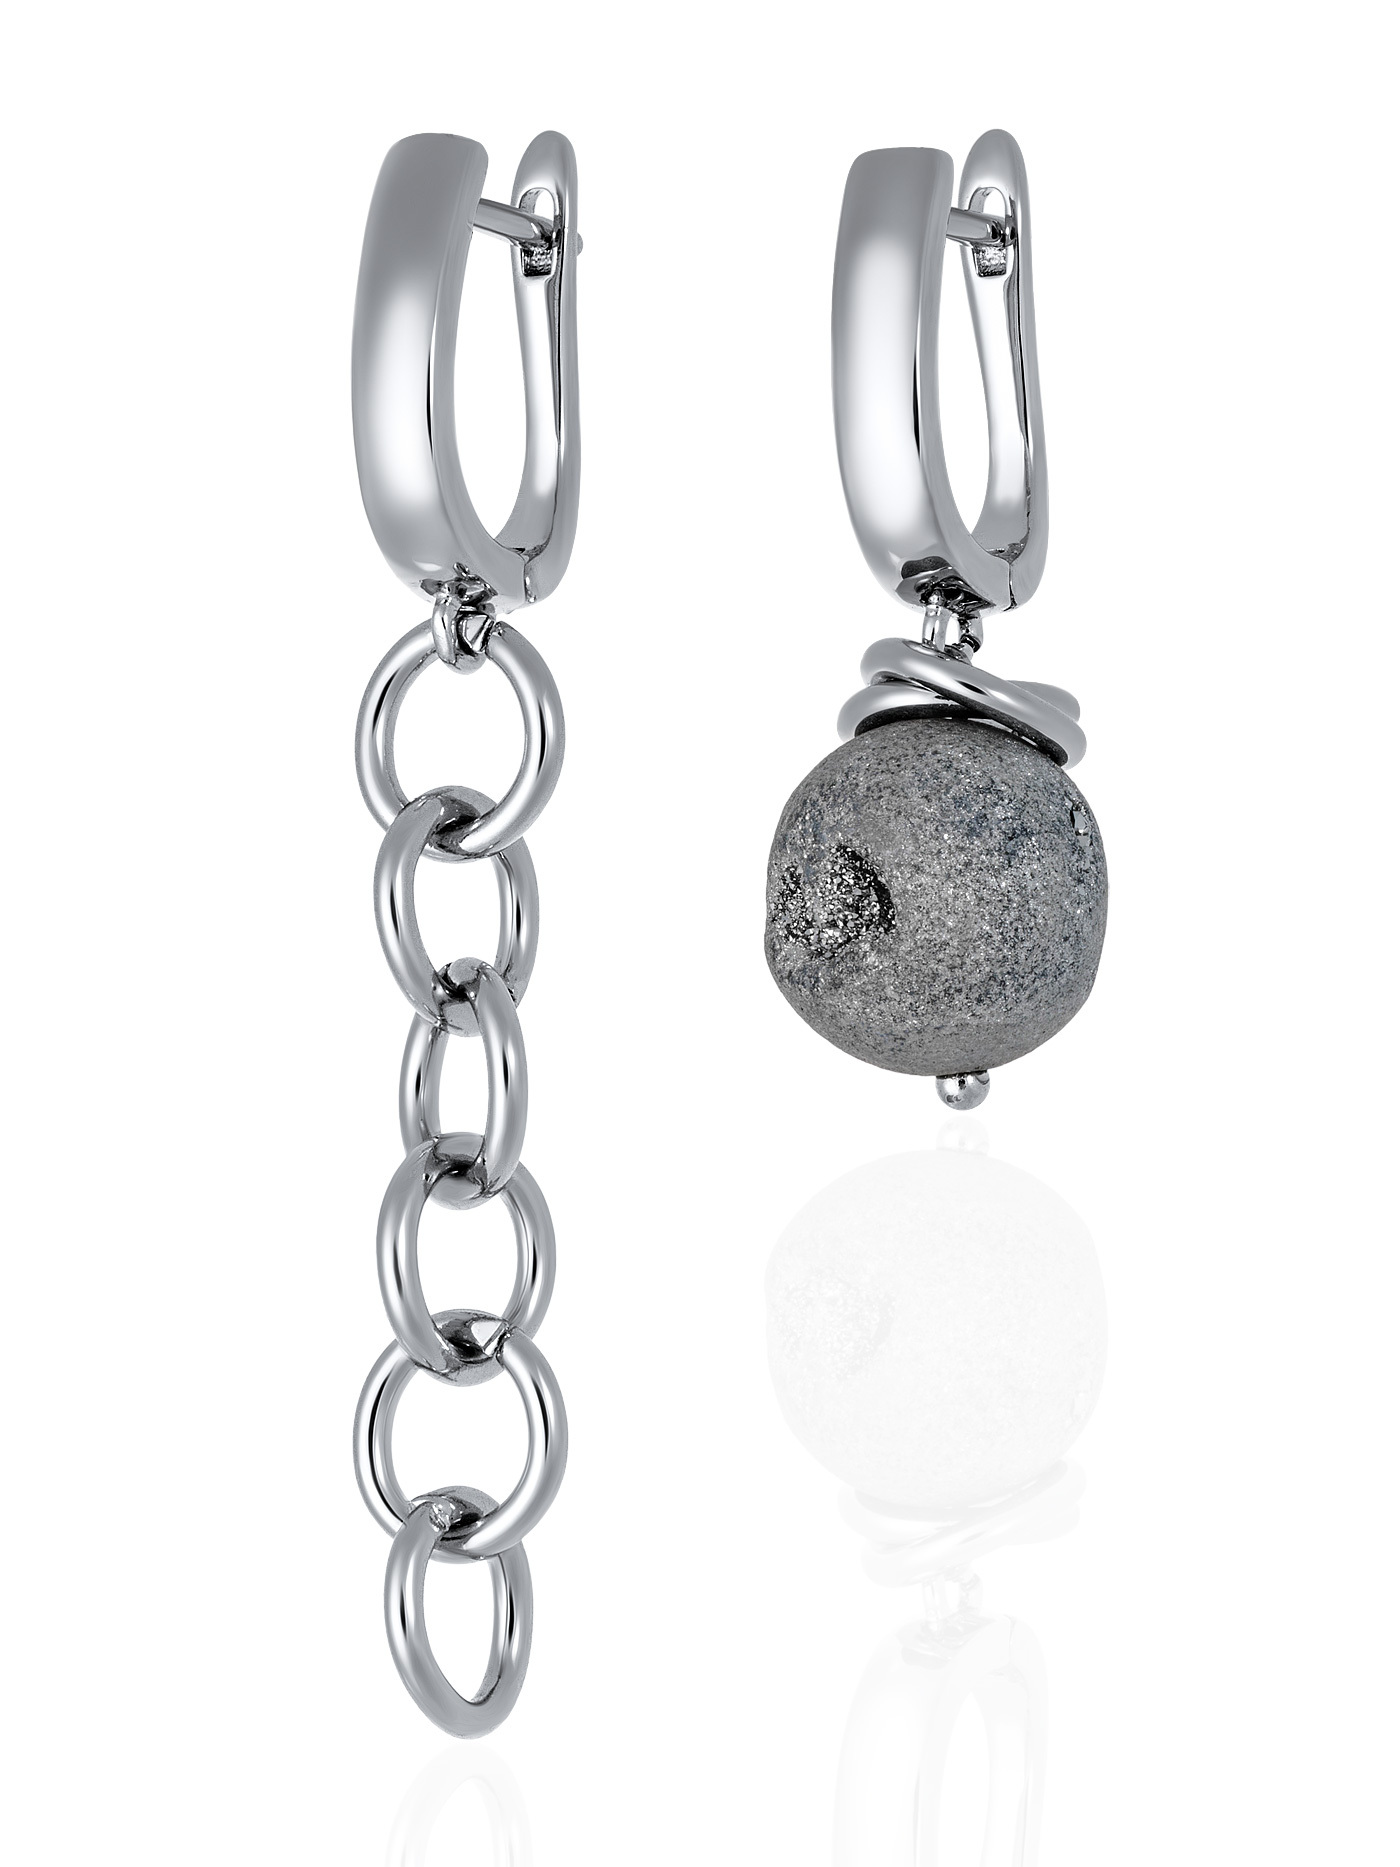 Асимметричные непарные дизайнерские серьги с натуральными камнями - серым агатом